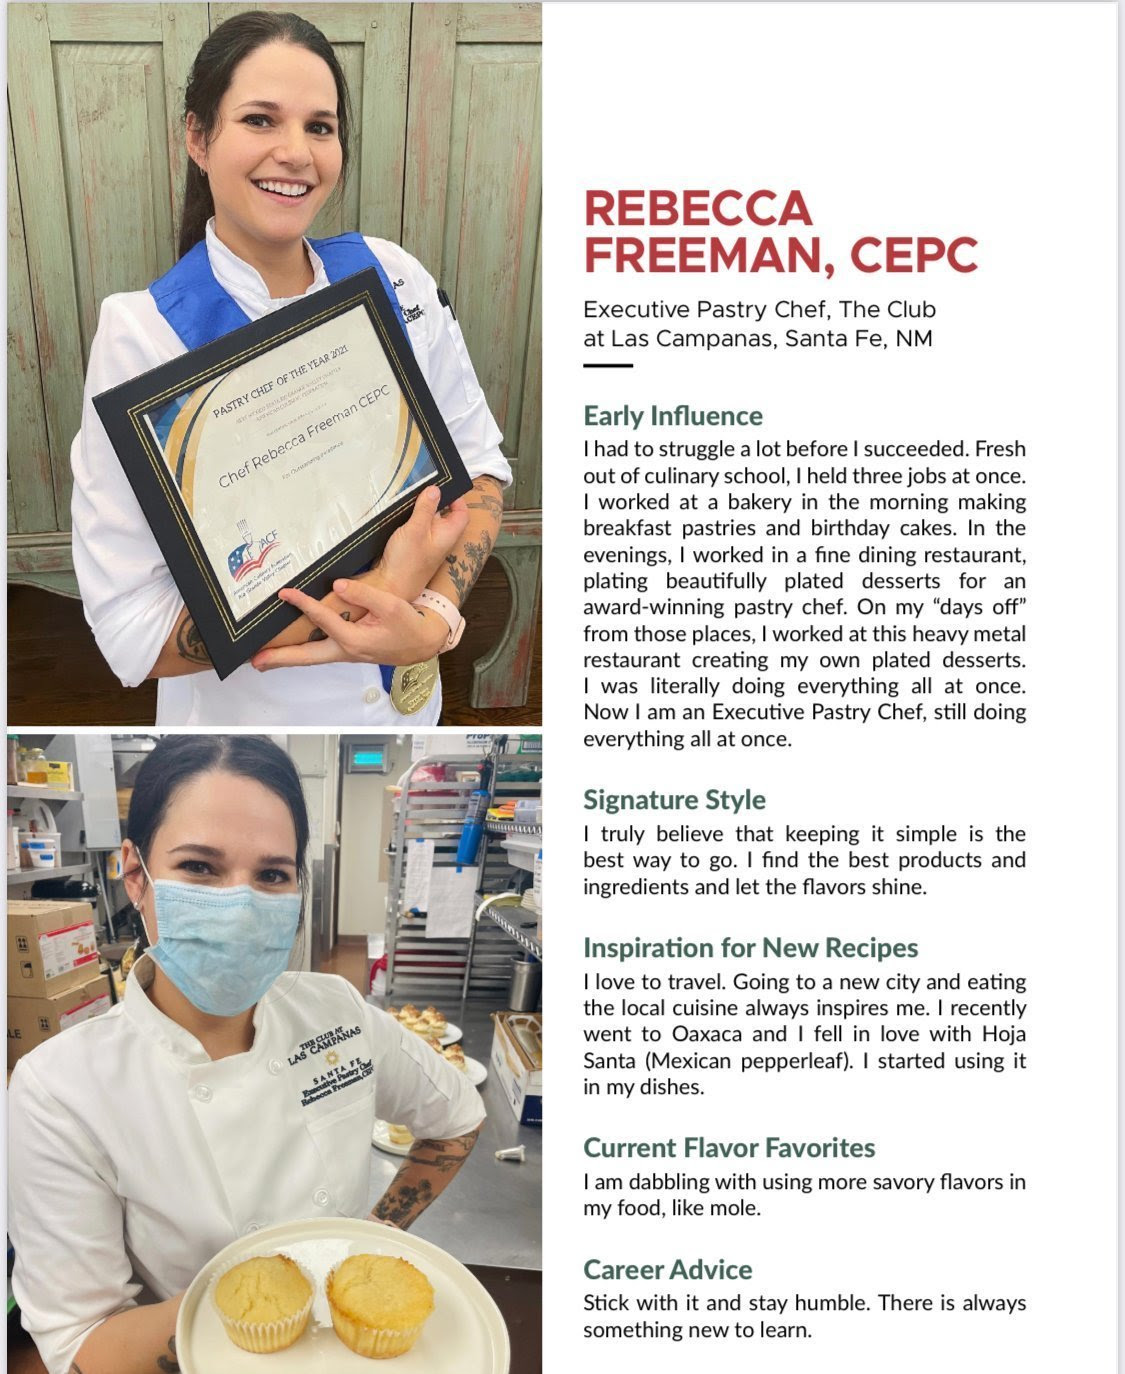 Praise for Rebecca Freeman CPEC